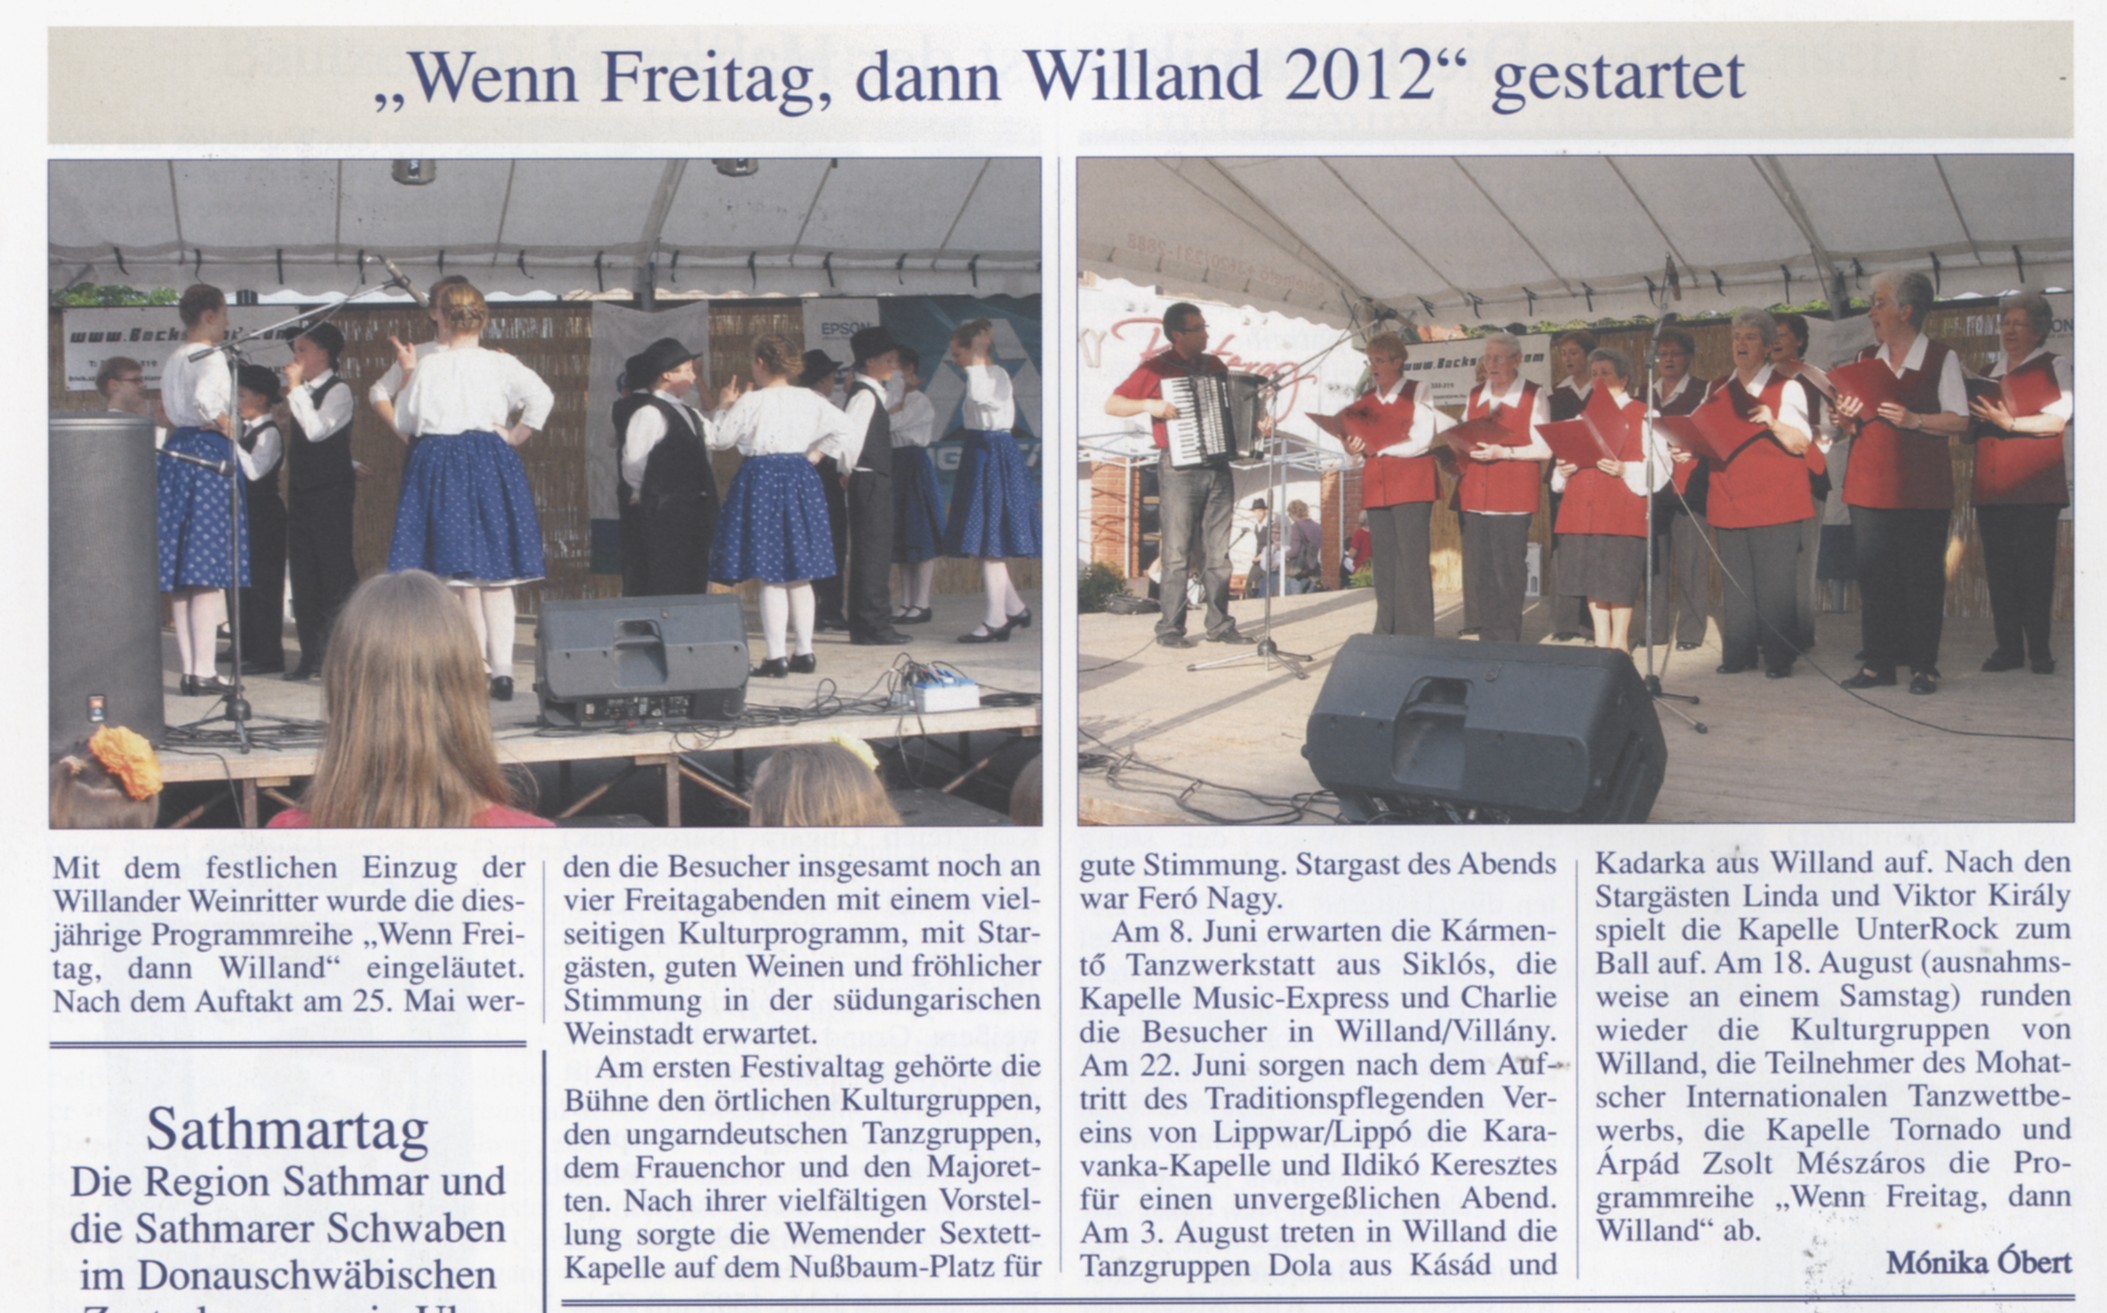 "Wenn Freitag, dann Willand 2012" gestarted